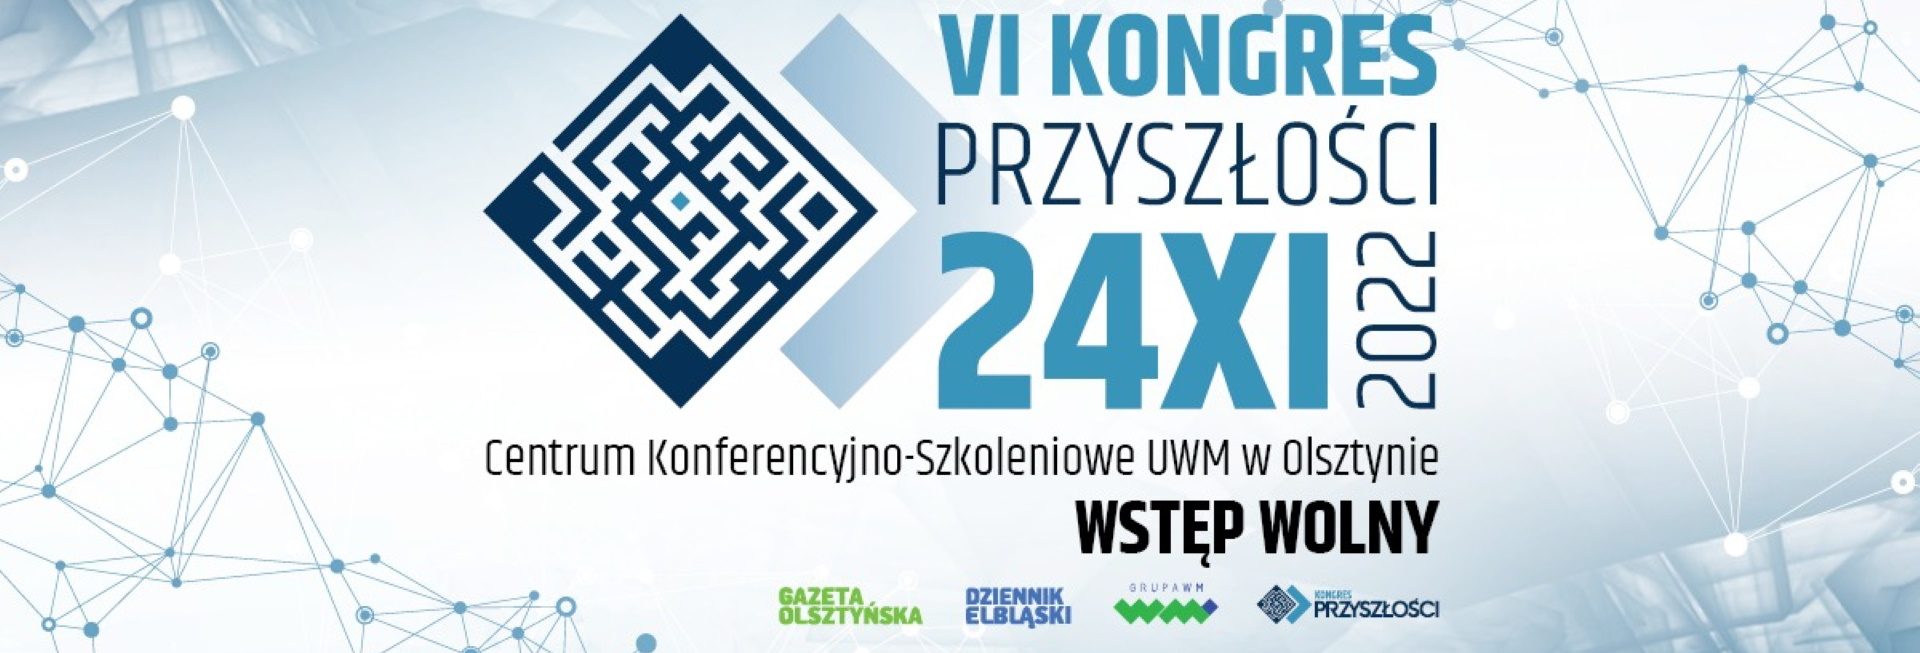 Plakat zapraszający do Olsztyna na 4. edycję Kongresu Przyszłości Olsztyn 2022.